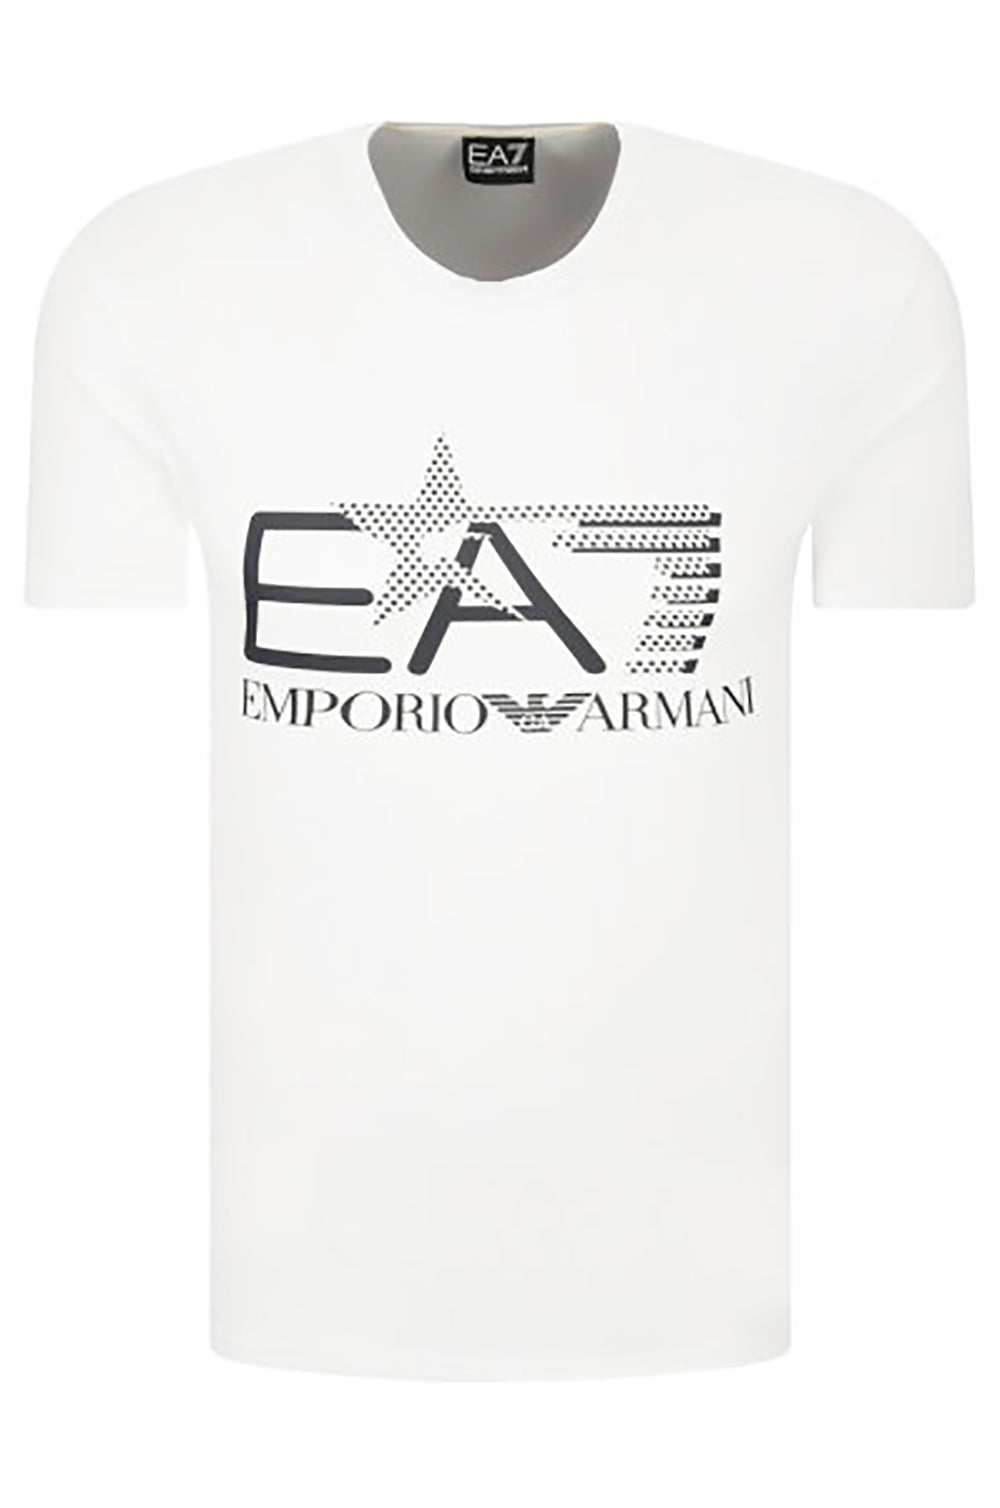 Maglietta Bianca Emporio Armani EA7 - mem39